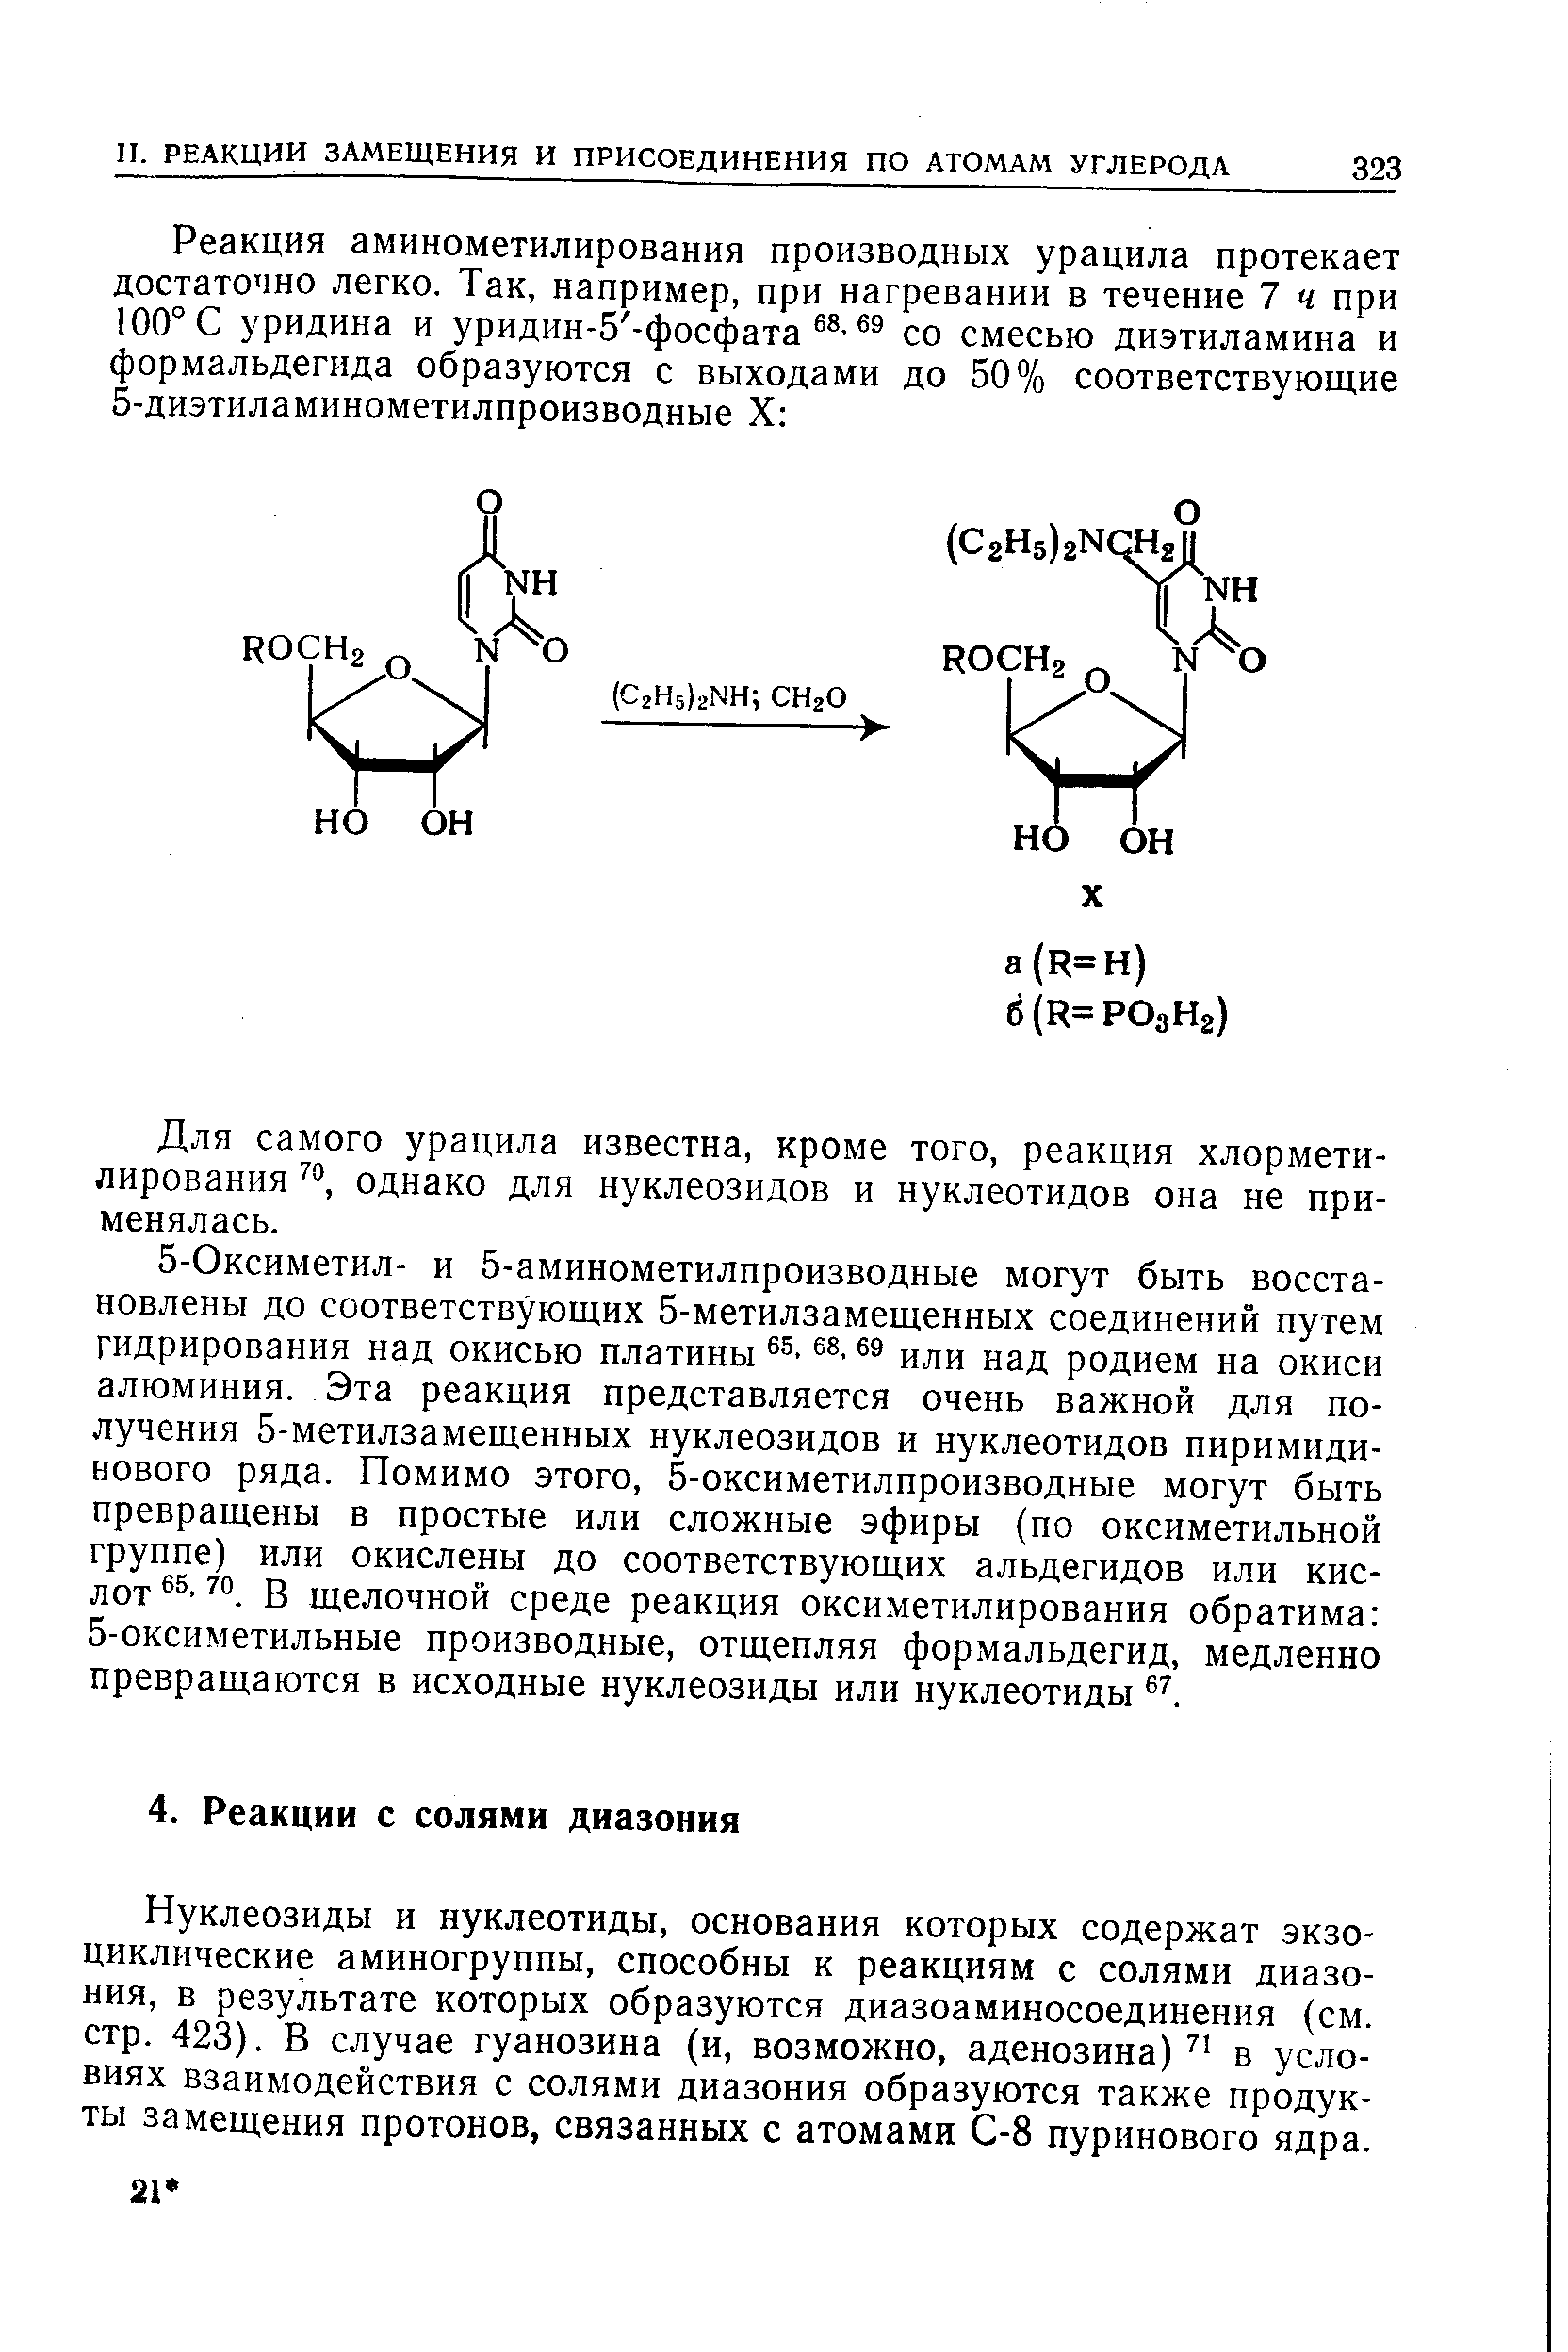 Нуклеозиды и нуклеотиды, основания которых содержат экзо-циклические аминогруппы, способны к реакциям с солями диазония, в результате которых образуются диазоаминосоединения (см. стр. 423). В случае гуанозина (и, возможно, аденозина) в условиях взаимодействия с солями диазония образуются также продукты замещения протонов, связанных с атомами С-8 пуринового ядра.